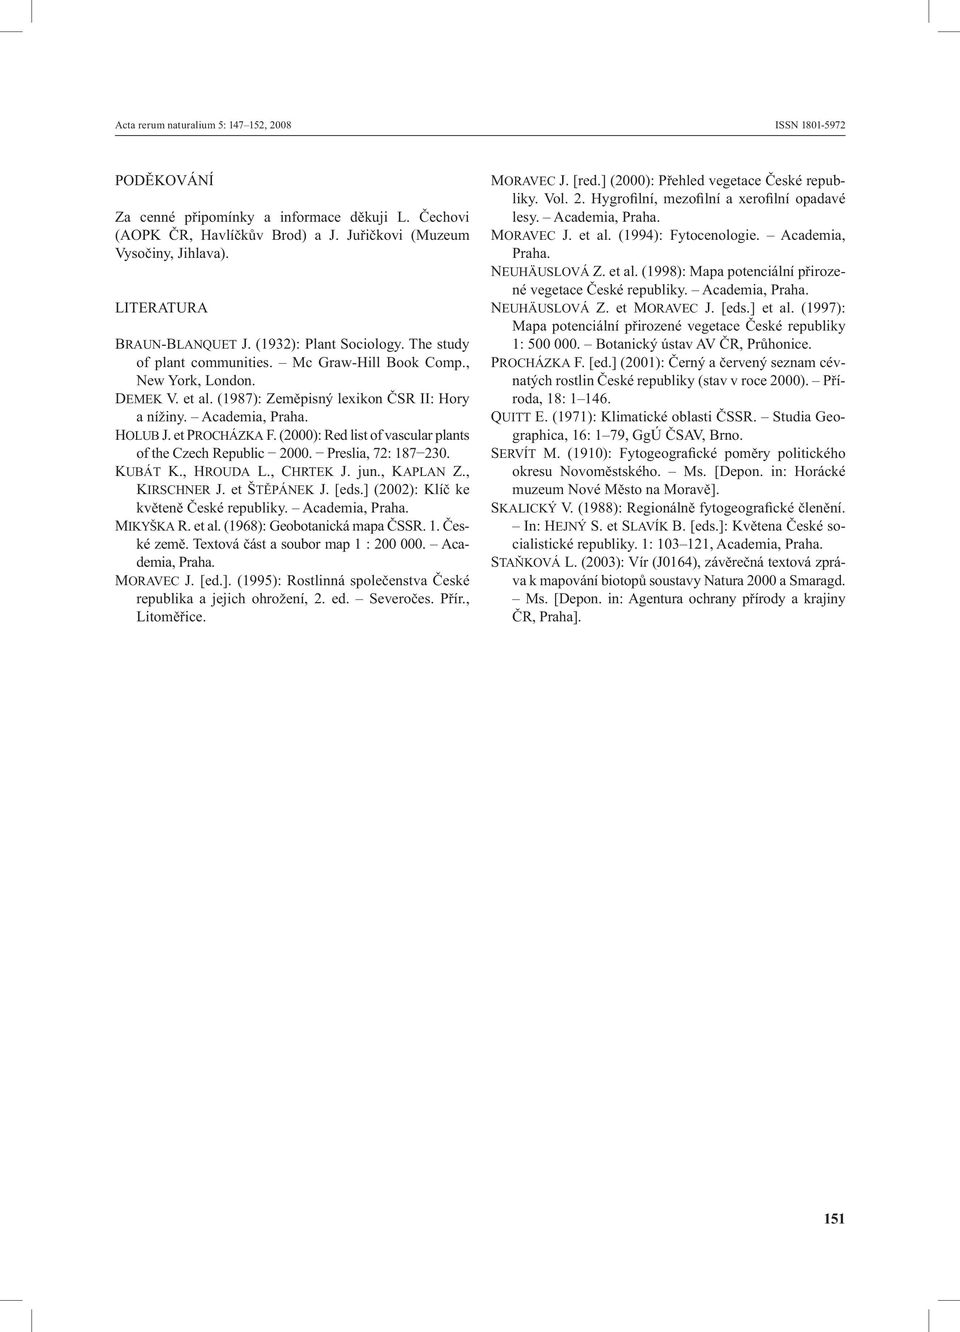 Academia, Praha. HOLUB J. et PROCHÁZKA F. (2000): Red list of vascular plants of the Czech Republic 2000. Preslia, 72: 187 230. KUBÁT K., HROUDA L., CHRTEK J. jun., KAPLAN Z., KIRSCHNER J.